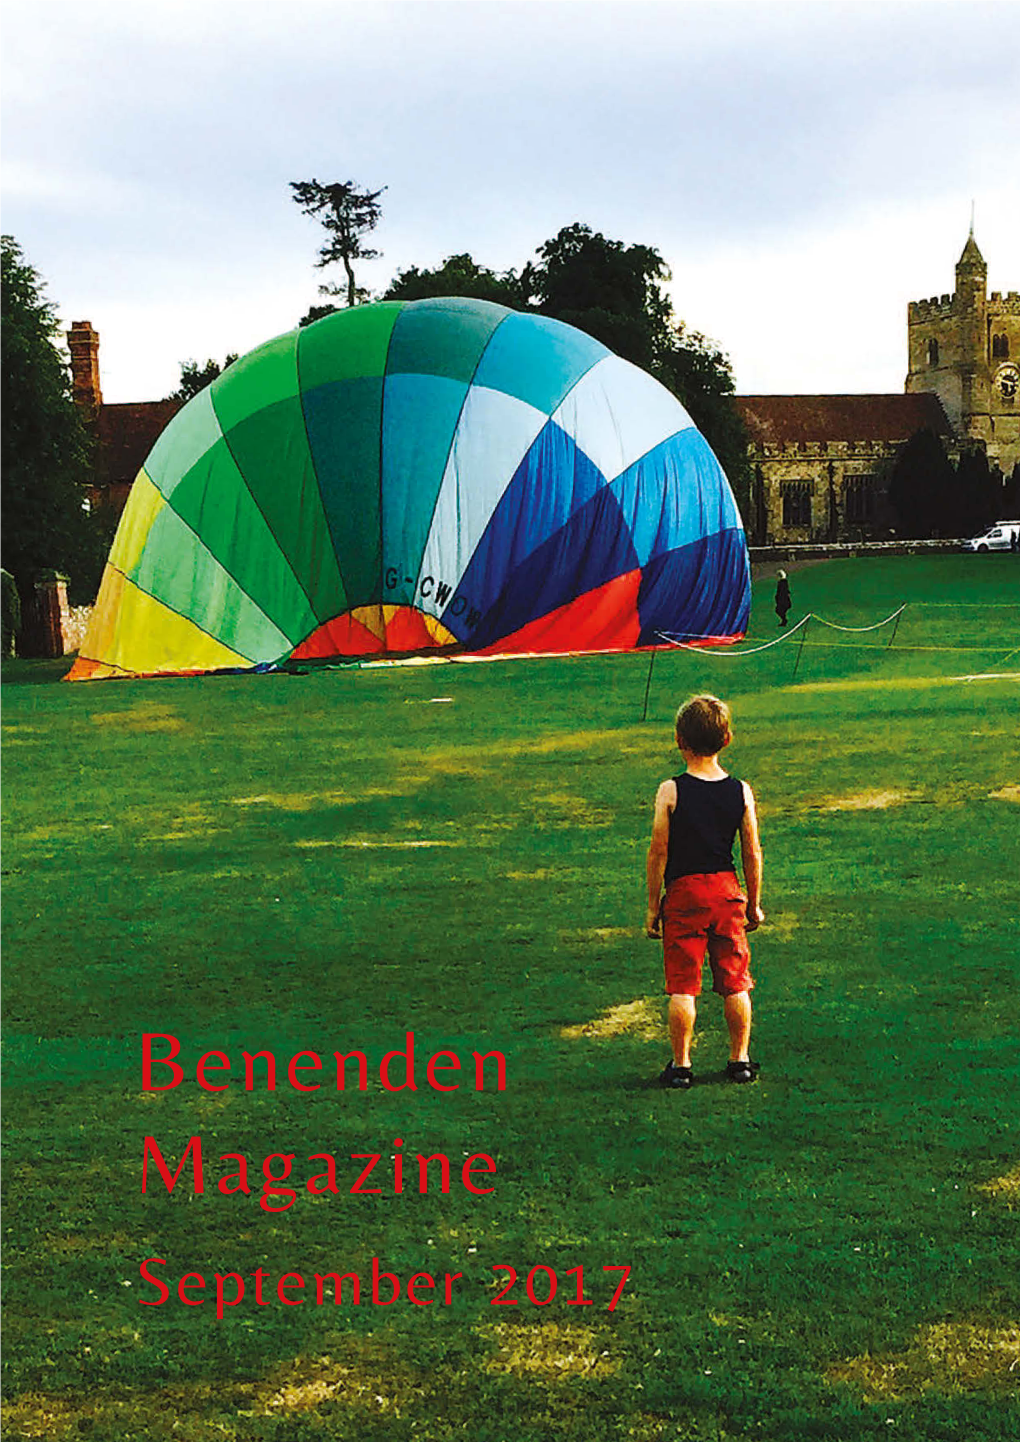 Benenden Magazine September 2017